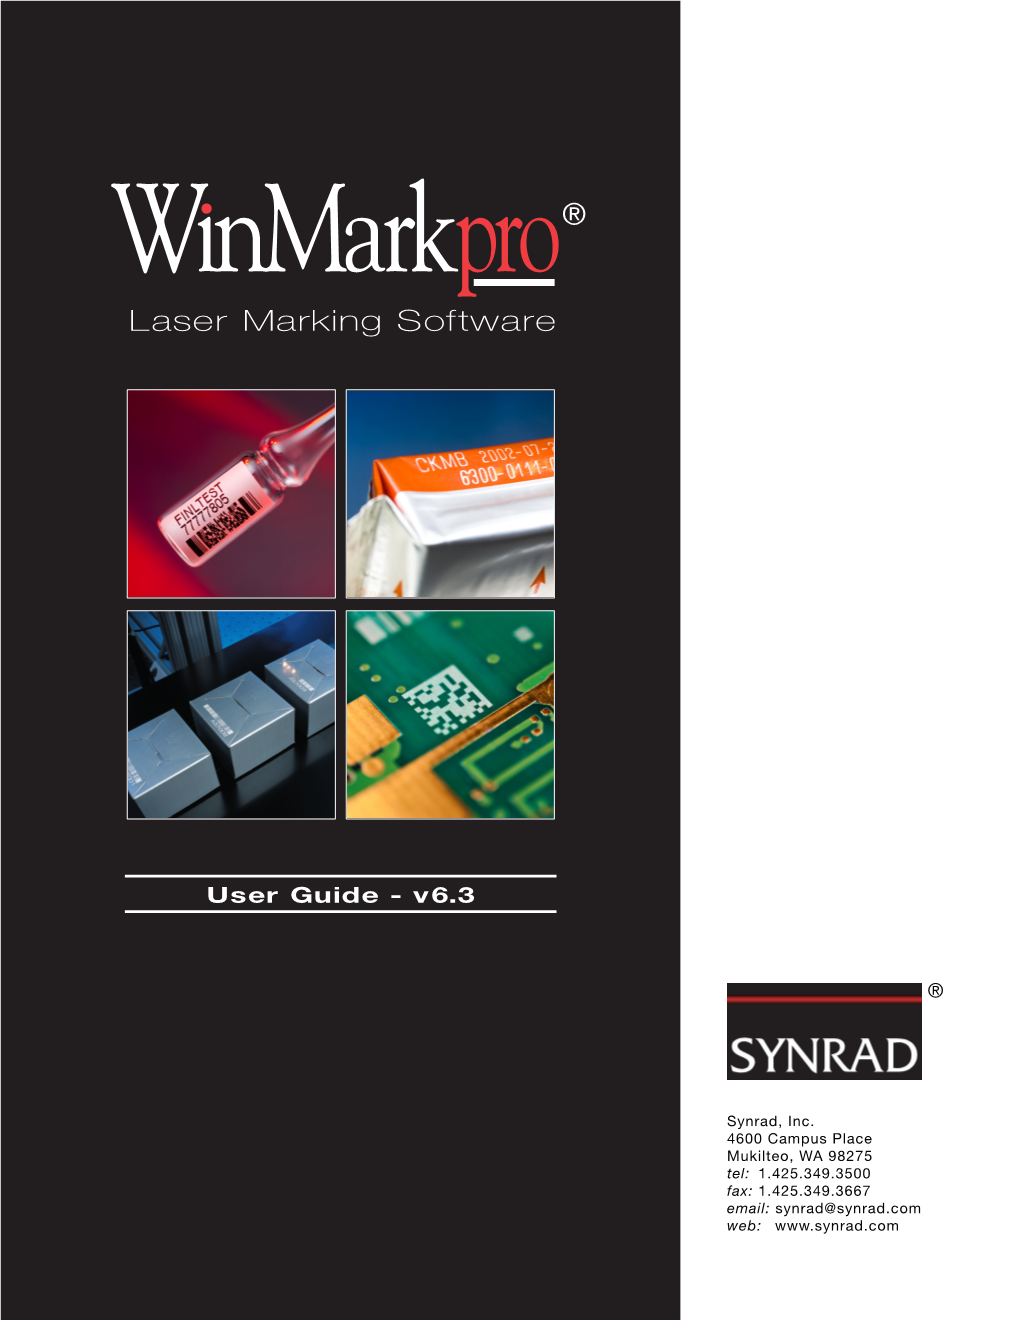 Winmark Pro User Guide, V6.3, Released June 2012